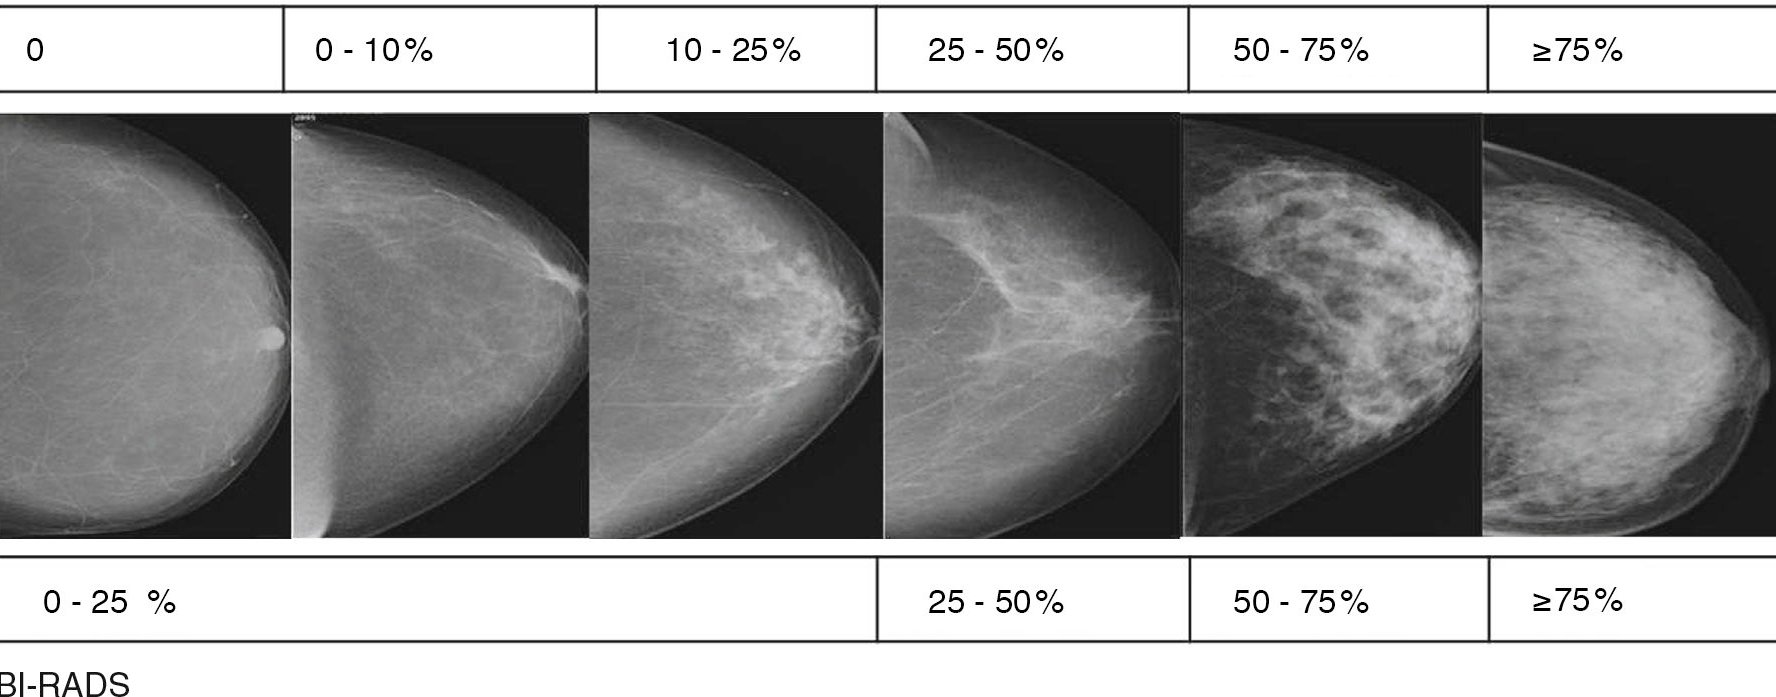 Маммография молочных желез 4. Маммография молочных желез bi rads 4. Фиброзно кистозная мастопатия молочной железы bi-rads-4a. Маммография классификация bi-rads. Bi-rads 3 молочной железы маммограмма.